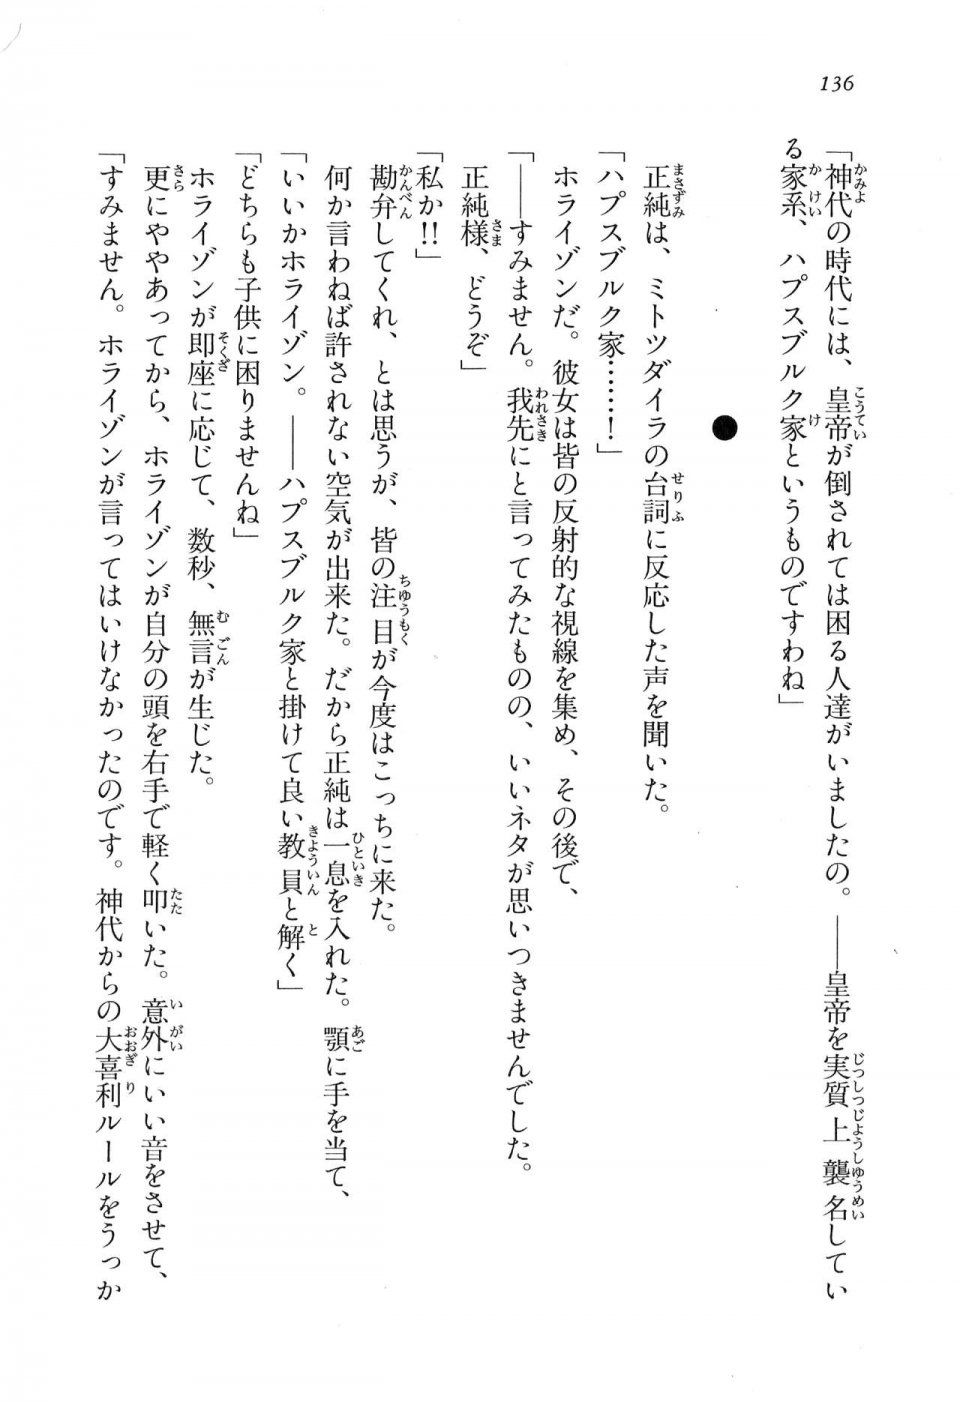 Kyoukai Senjou no Horizon LN Vol 16(7A) - Photo #136